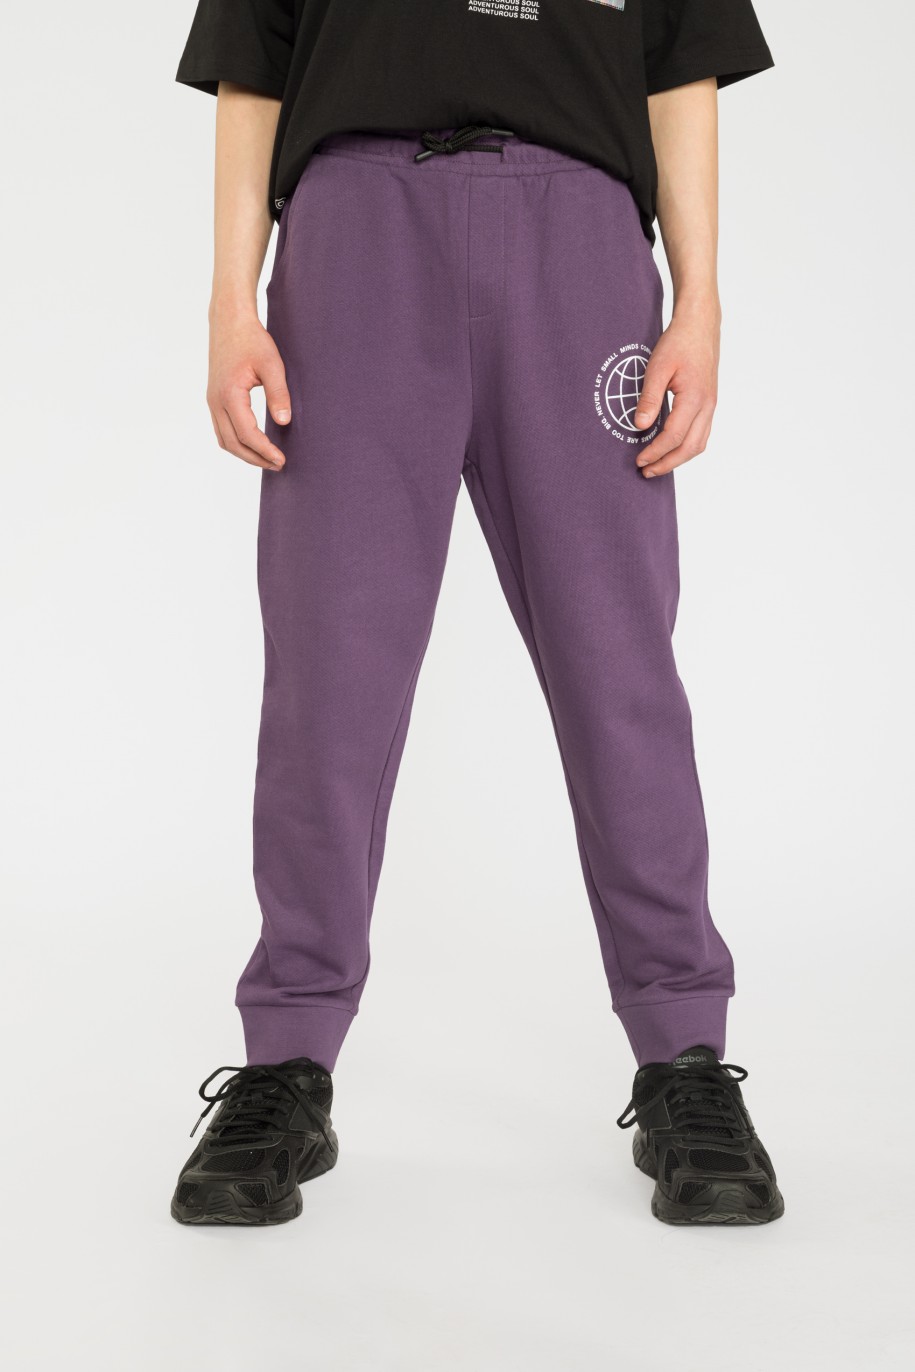 Fioletowe spodnie dresowe z nadrukiem - 35930